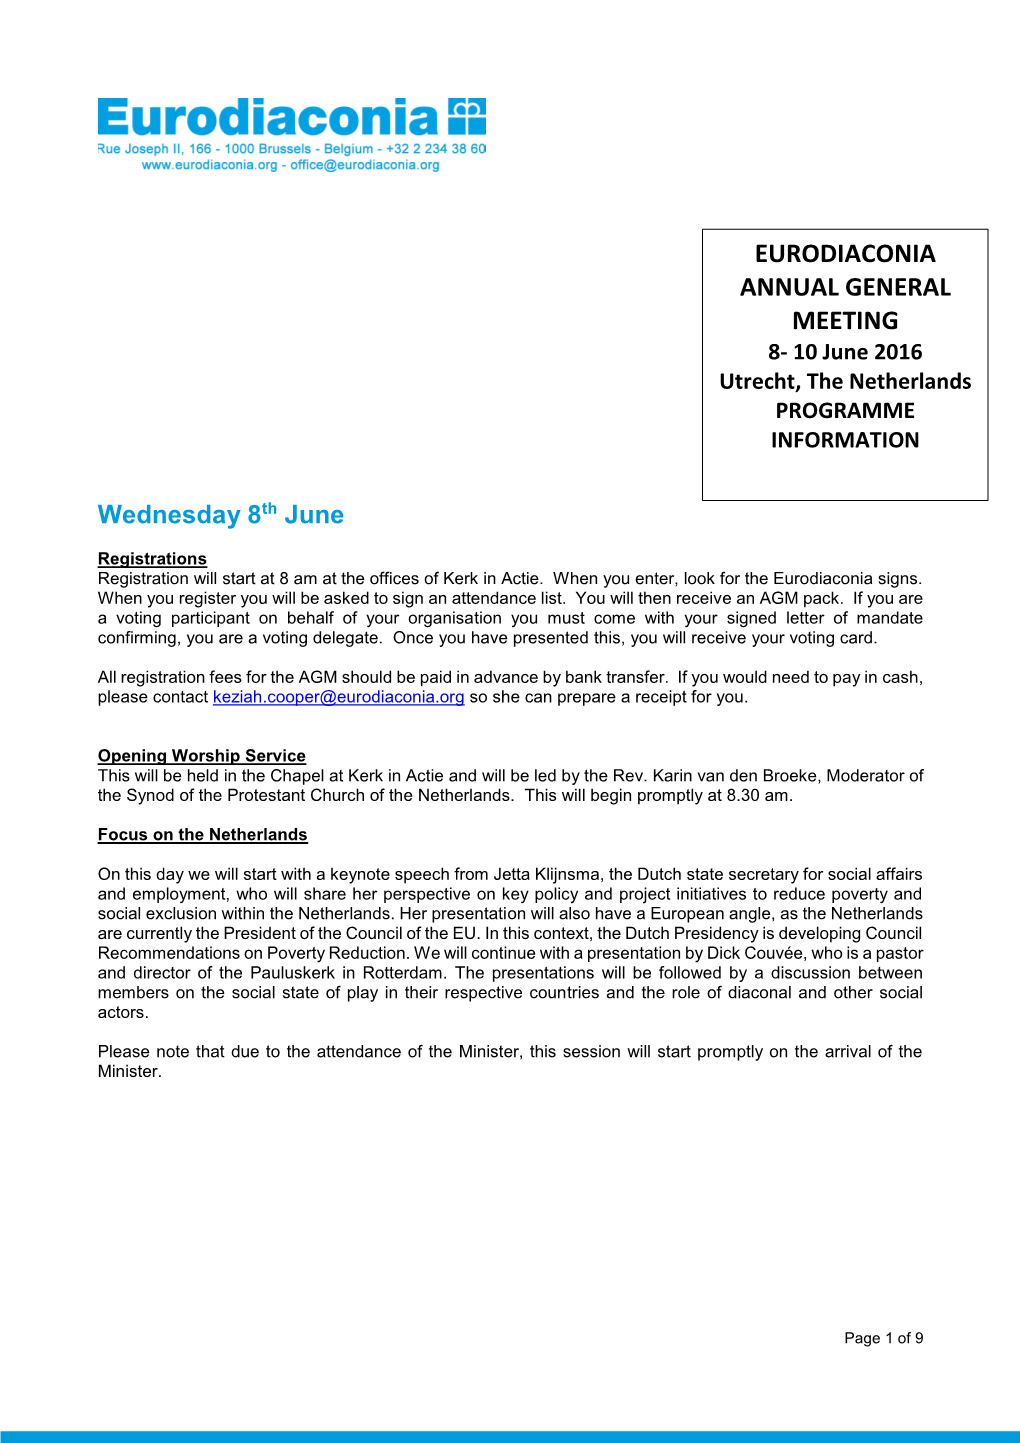 Eurodiaconia AGM 2016 PROGRAMME INFORMATION